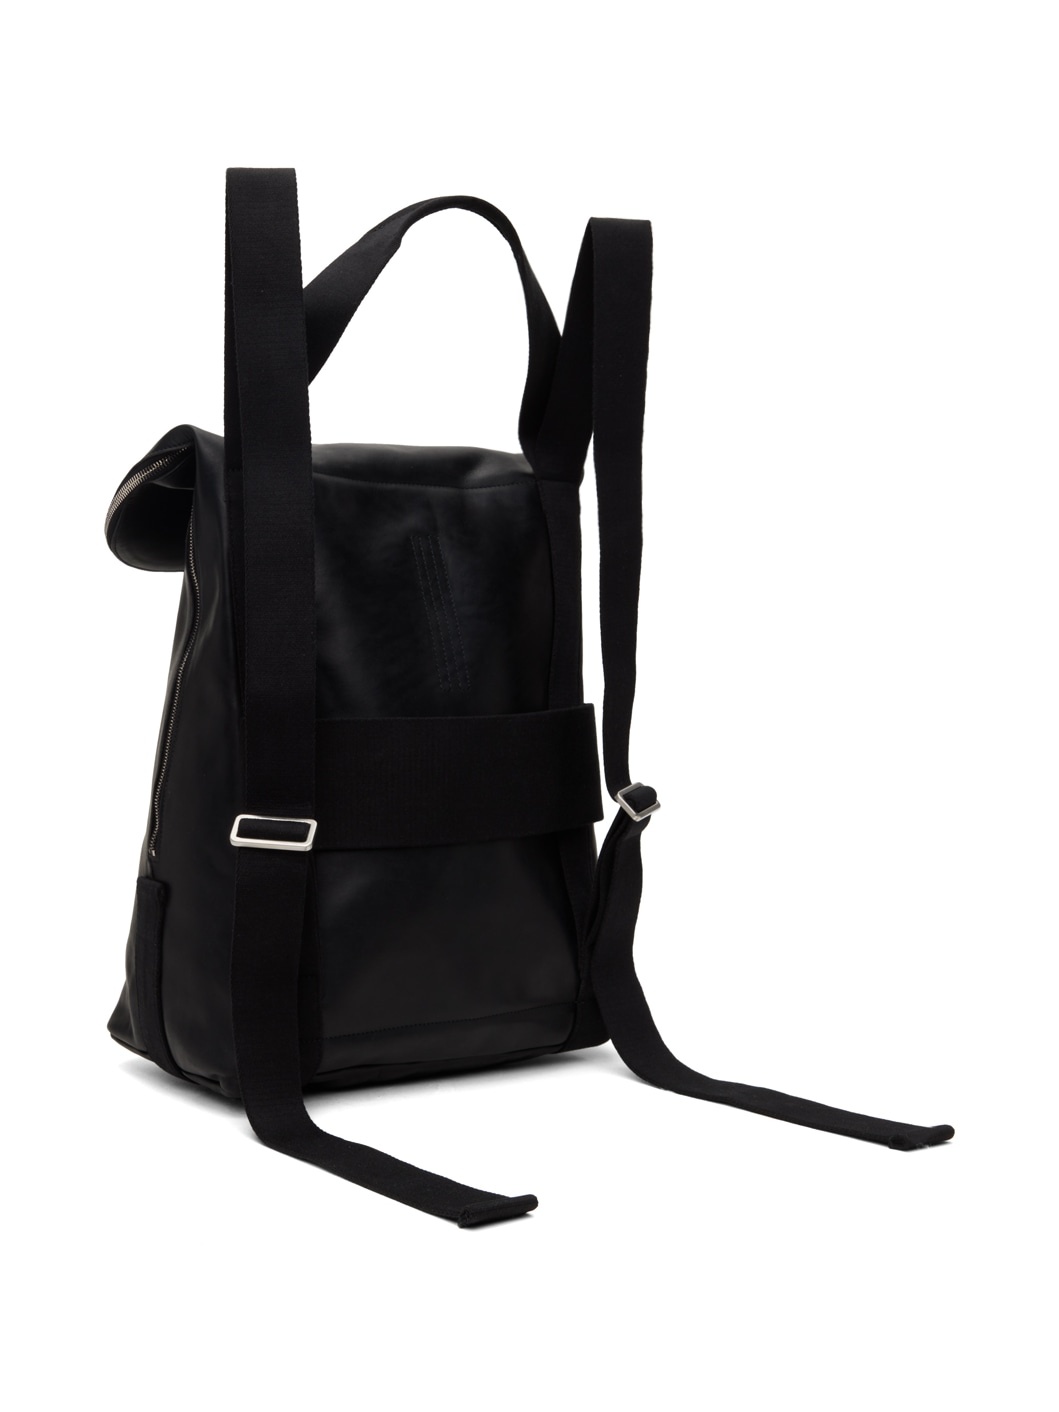 Black Cargo Backpack - 3